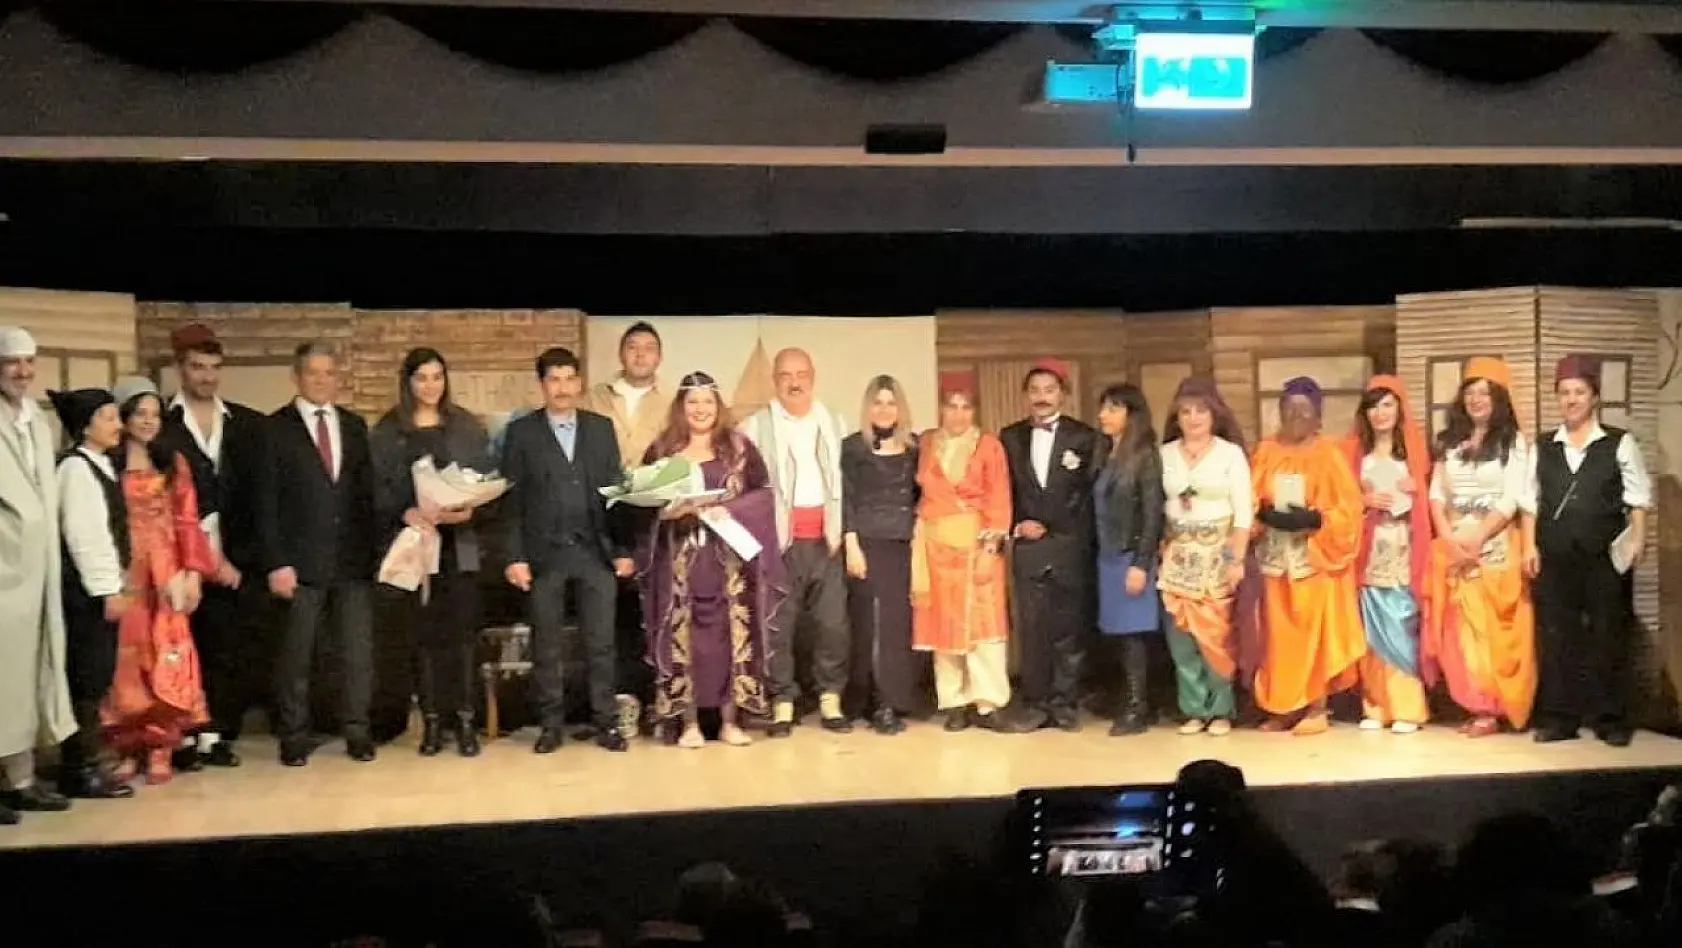 Köyceğizli tiyatrocular Kanlı Nigar' oyununu başarıyla sergilediler